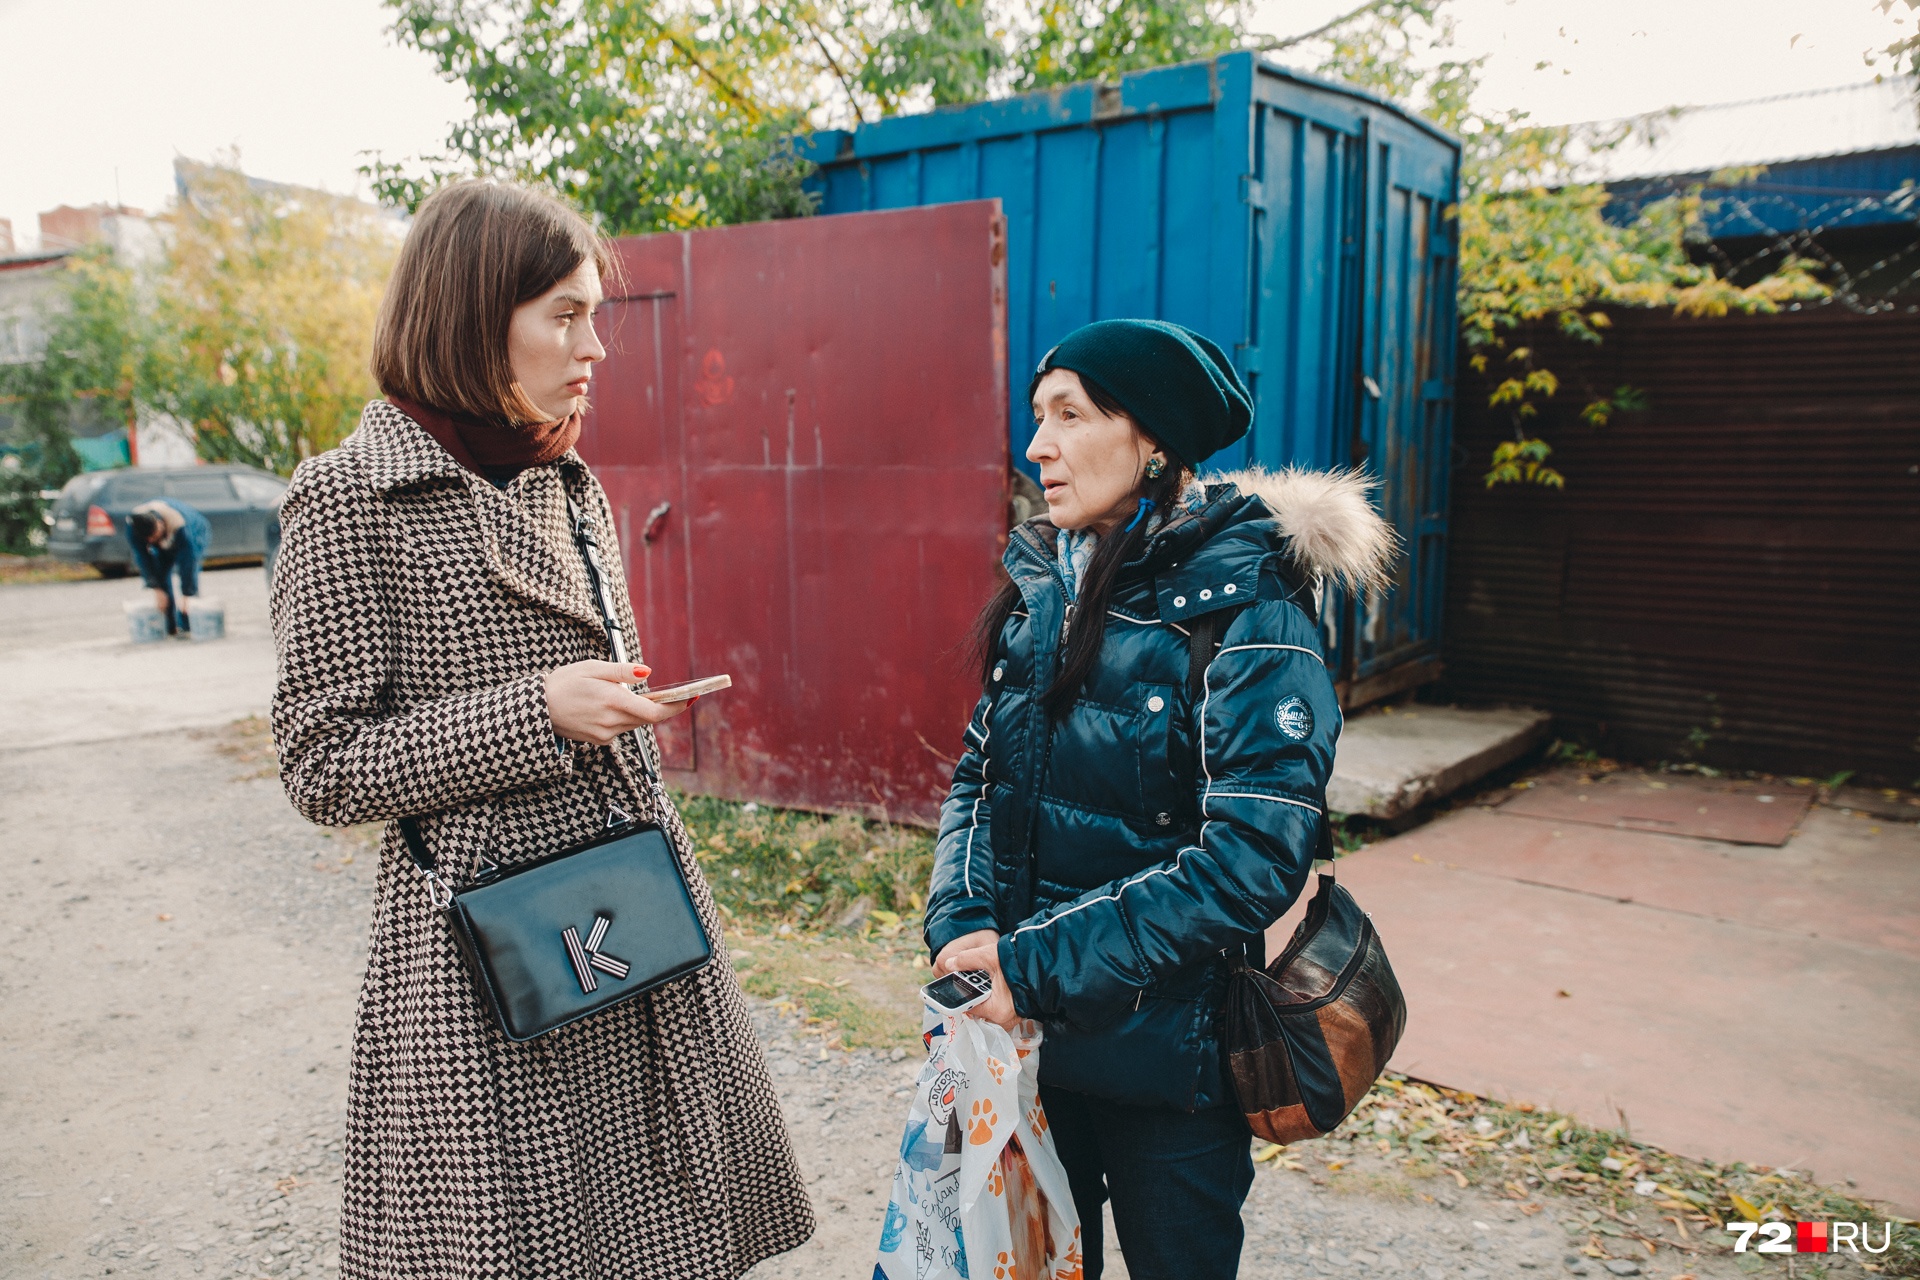 Наталья Косполова (на фото справа) знает о районе Тычкова и улице Пристанской много, очень много. С ее помощью узнали секреты, которые таит этот прибрежный участок города